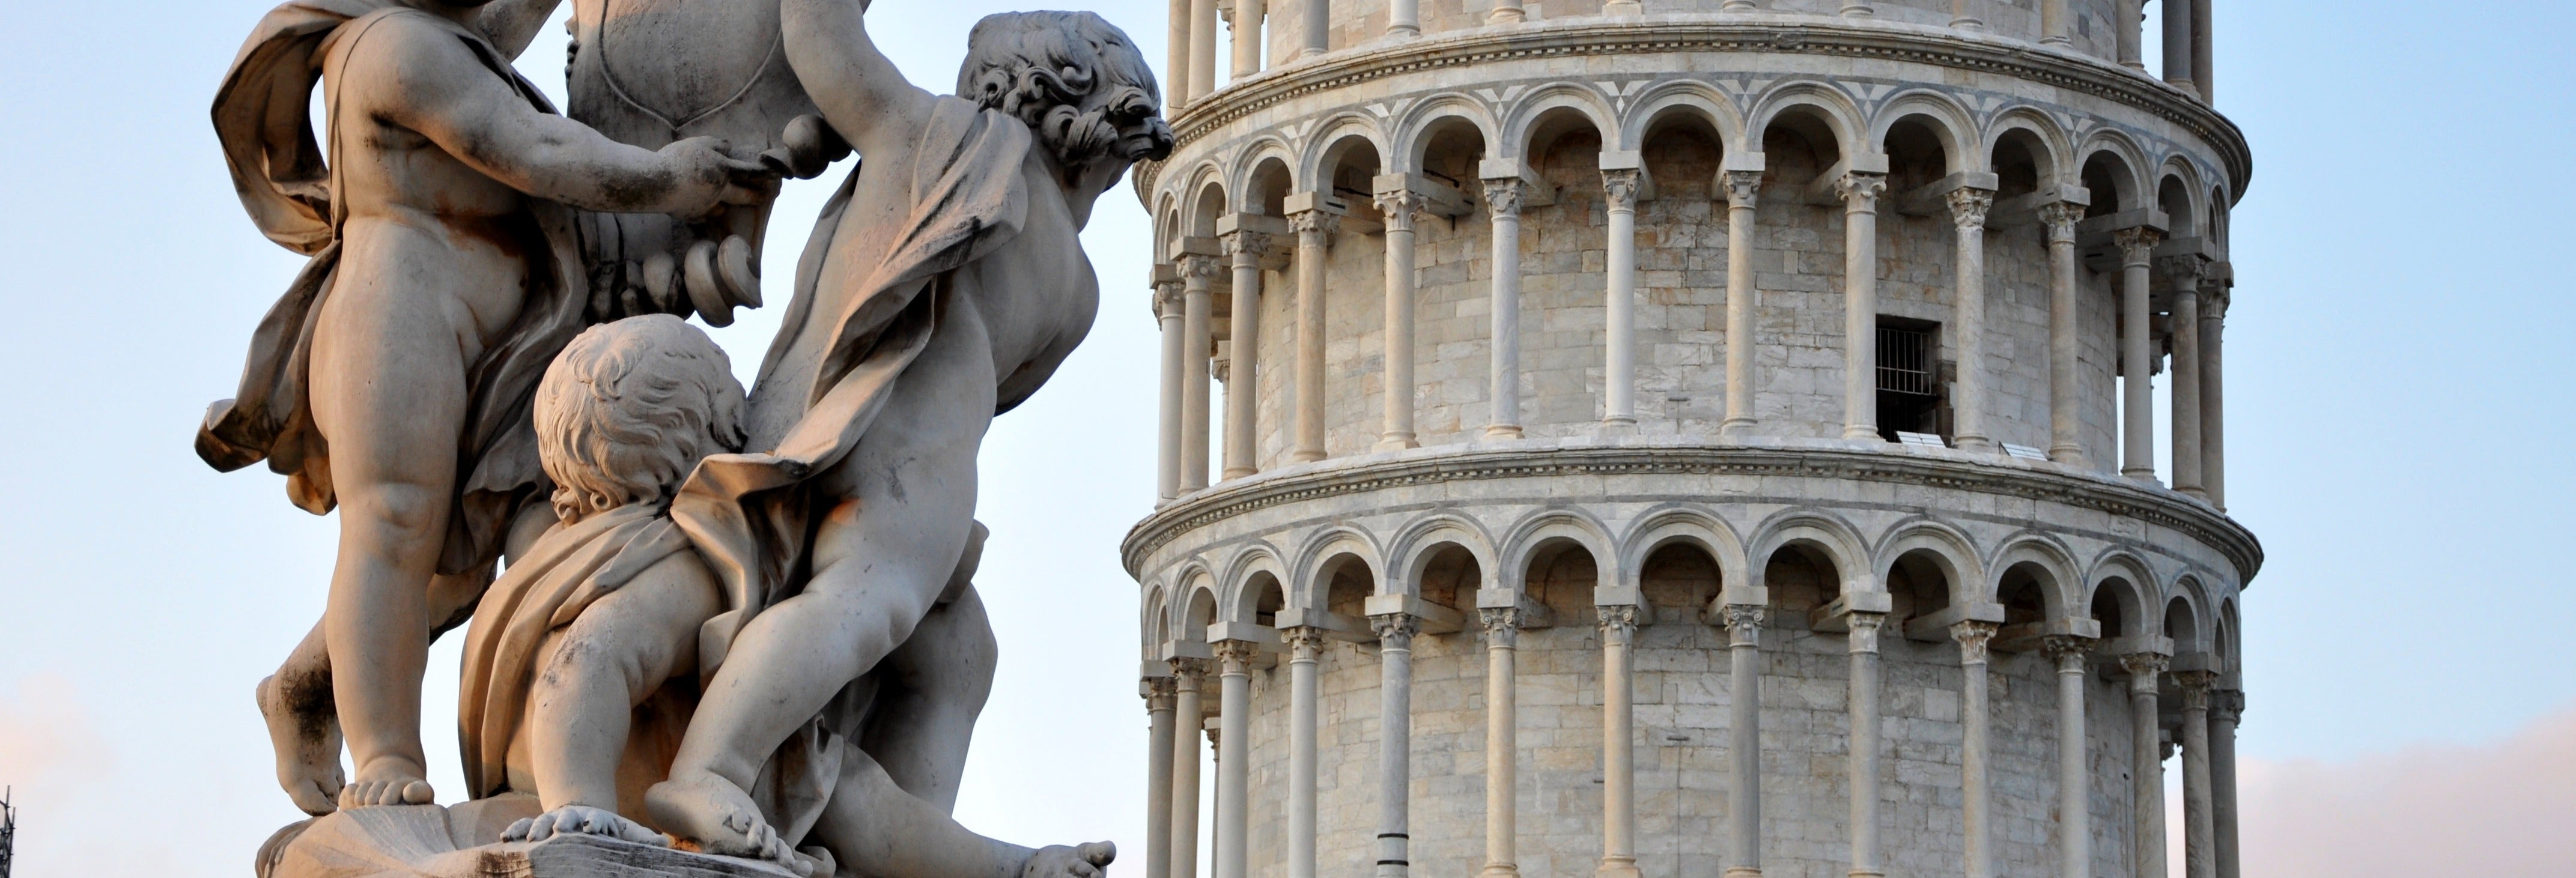 Excursão a Pisa e subida à Torre Inclinada